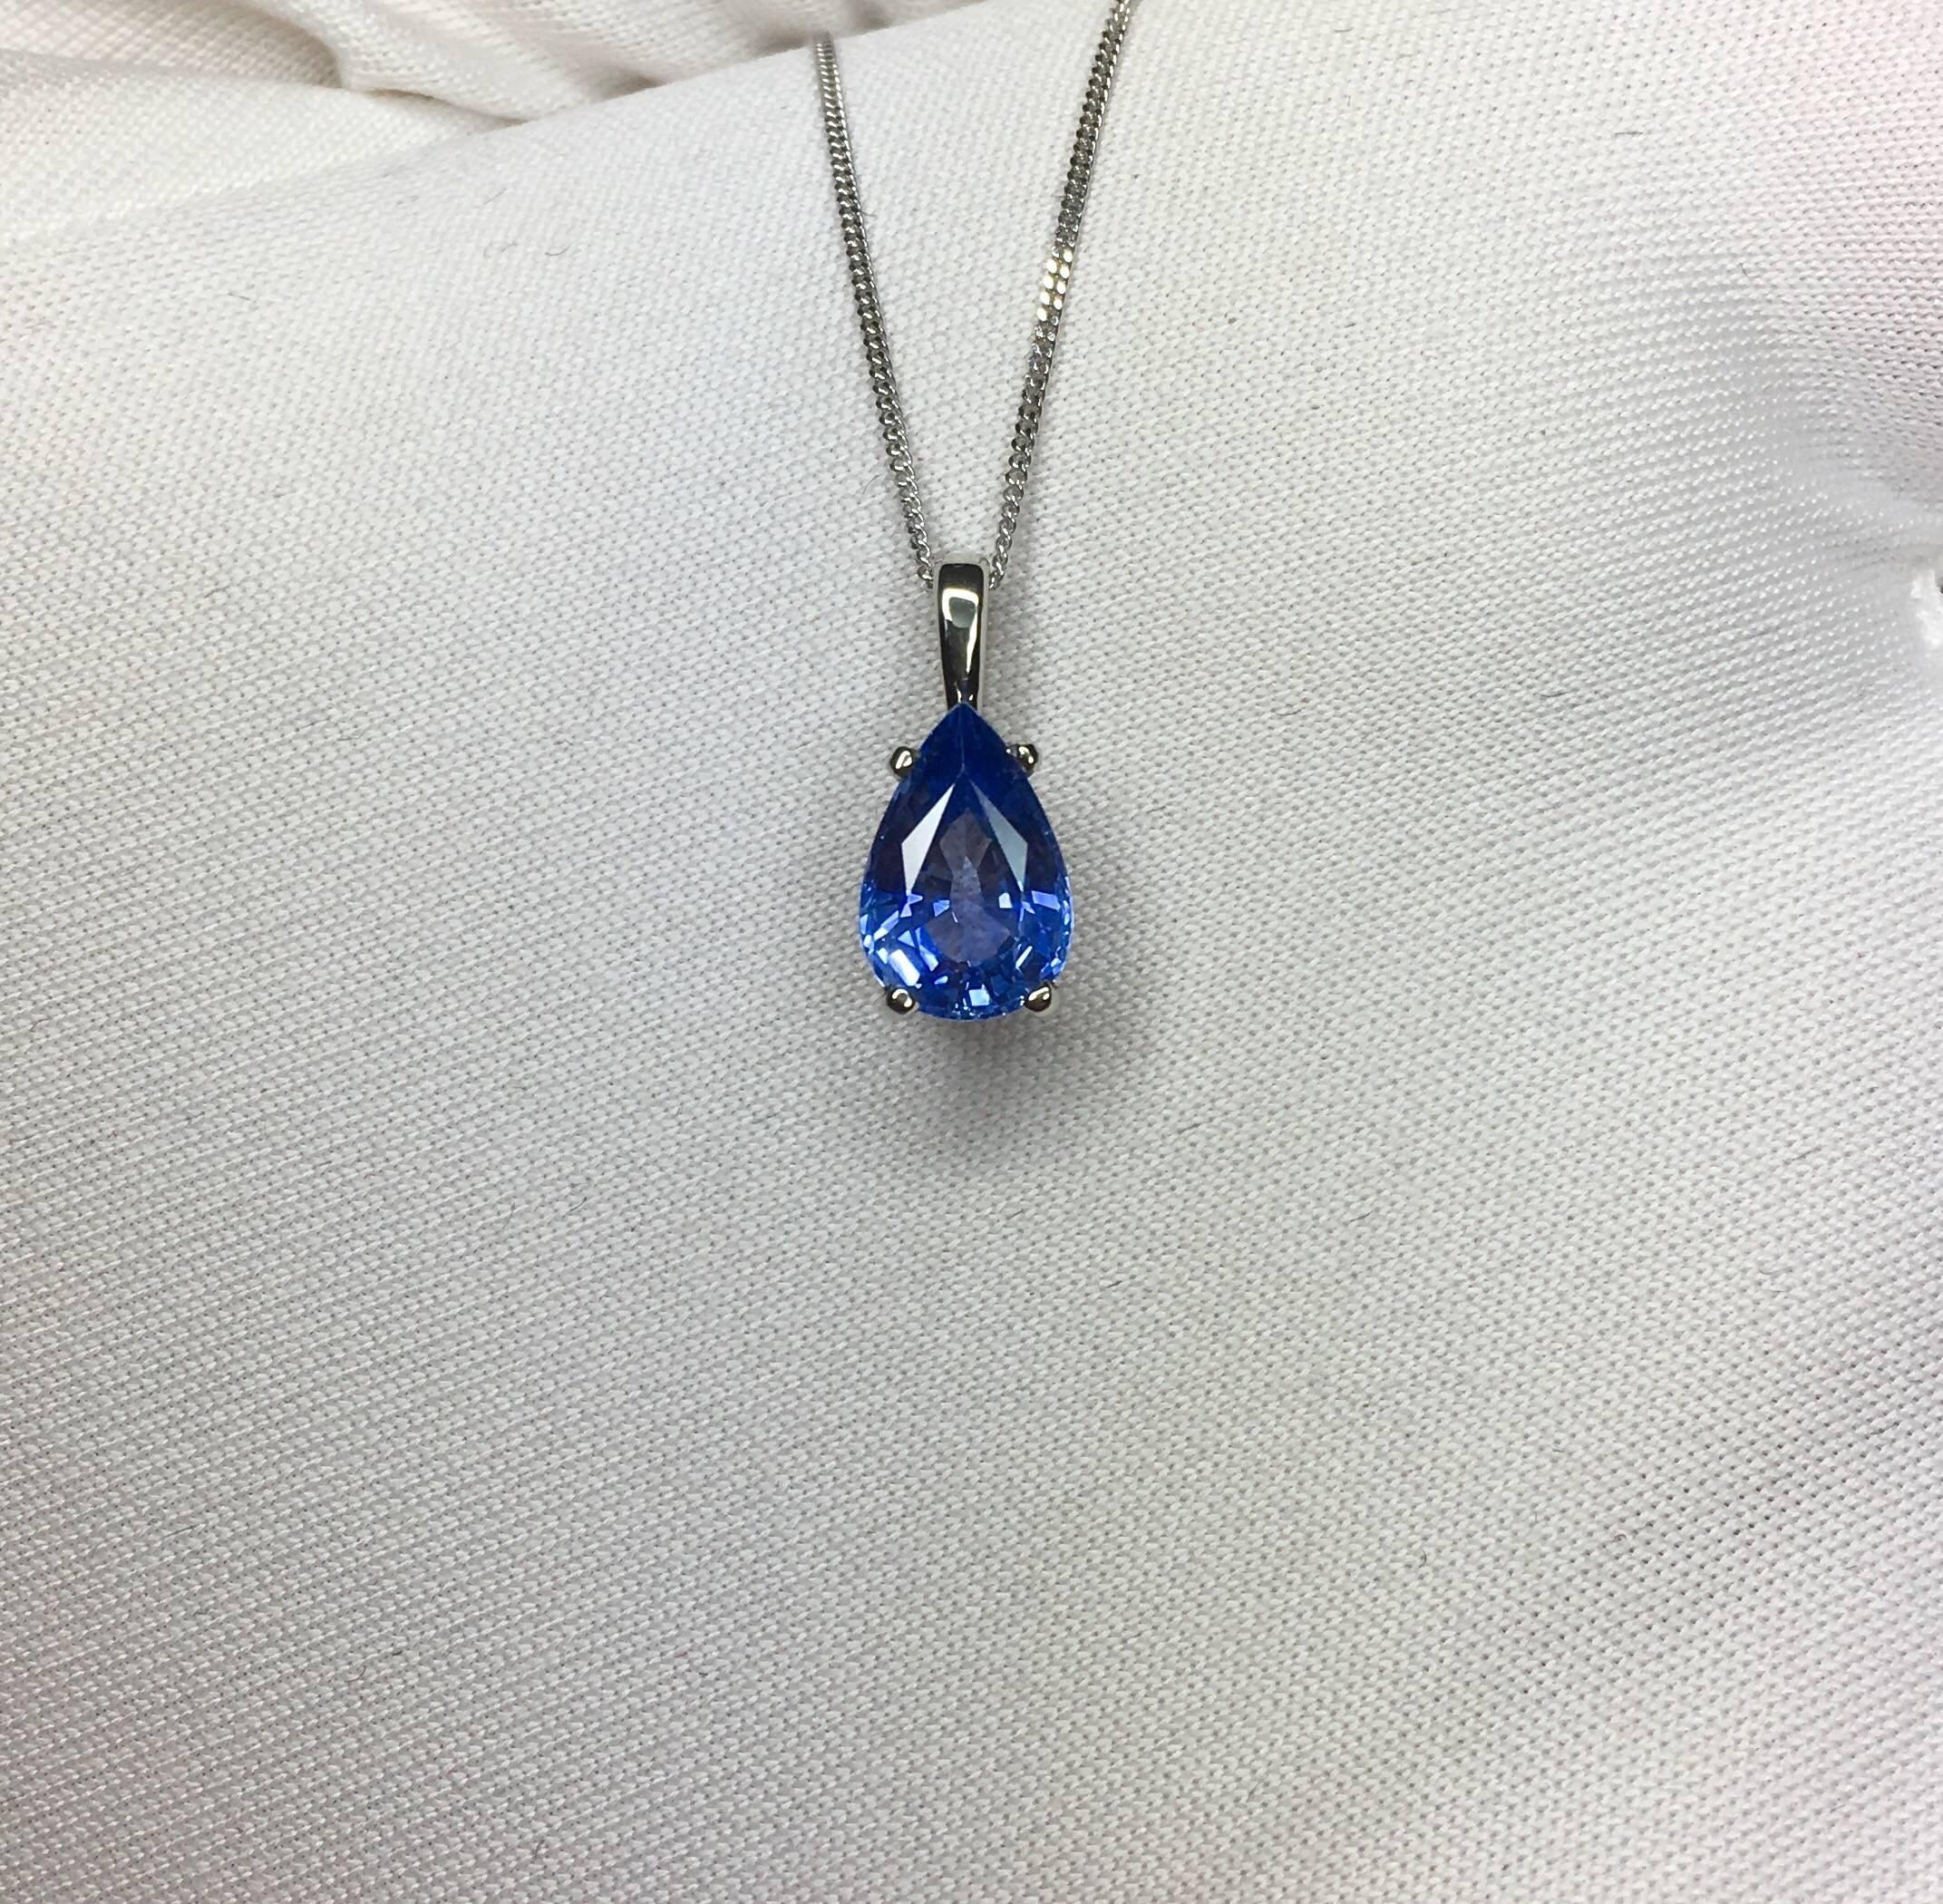 Women's or Men's Ceylon Blue Sapphire 1.34 Carat Pear/Teardrop Cut Solitaire White Gold Pendant